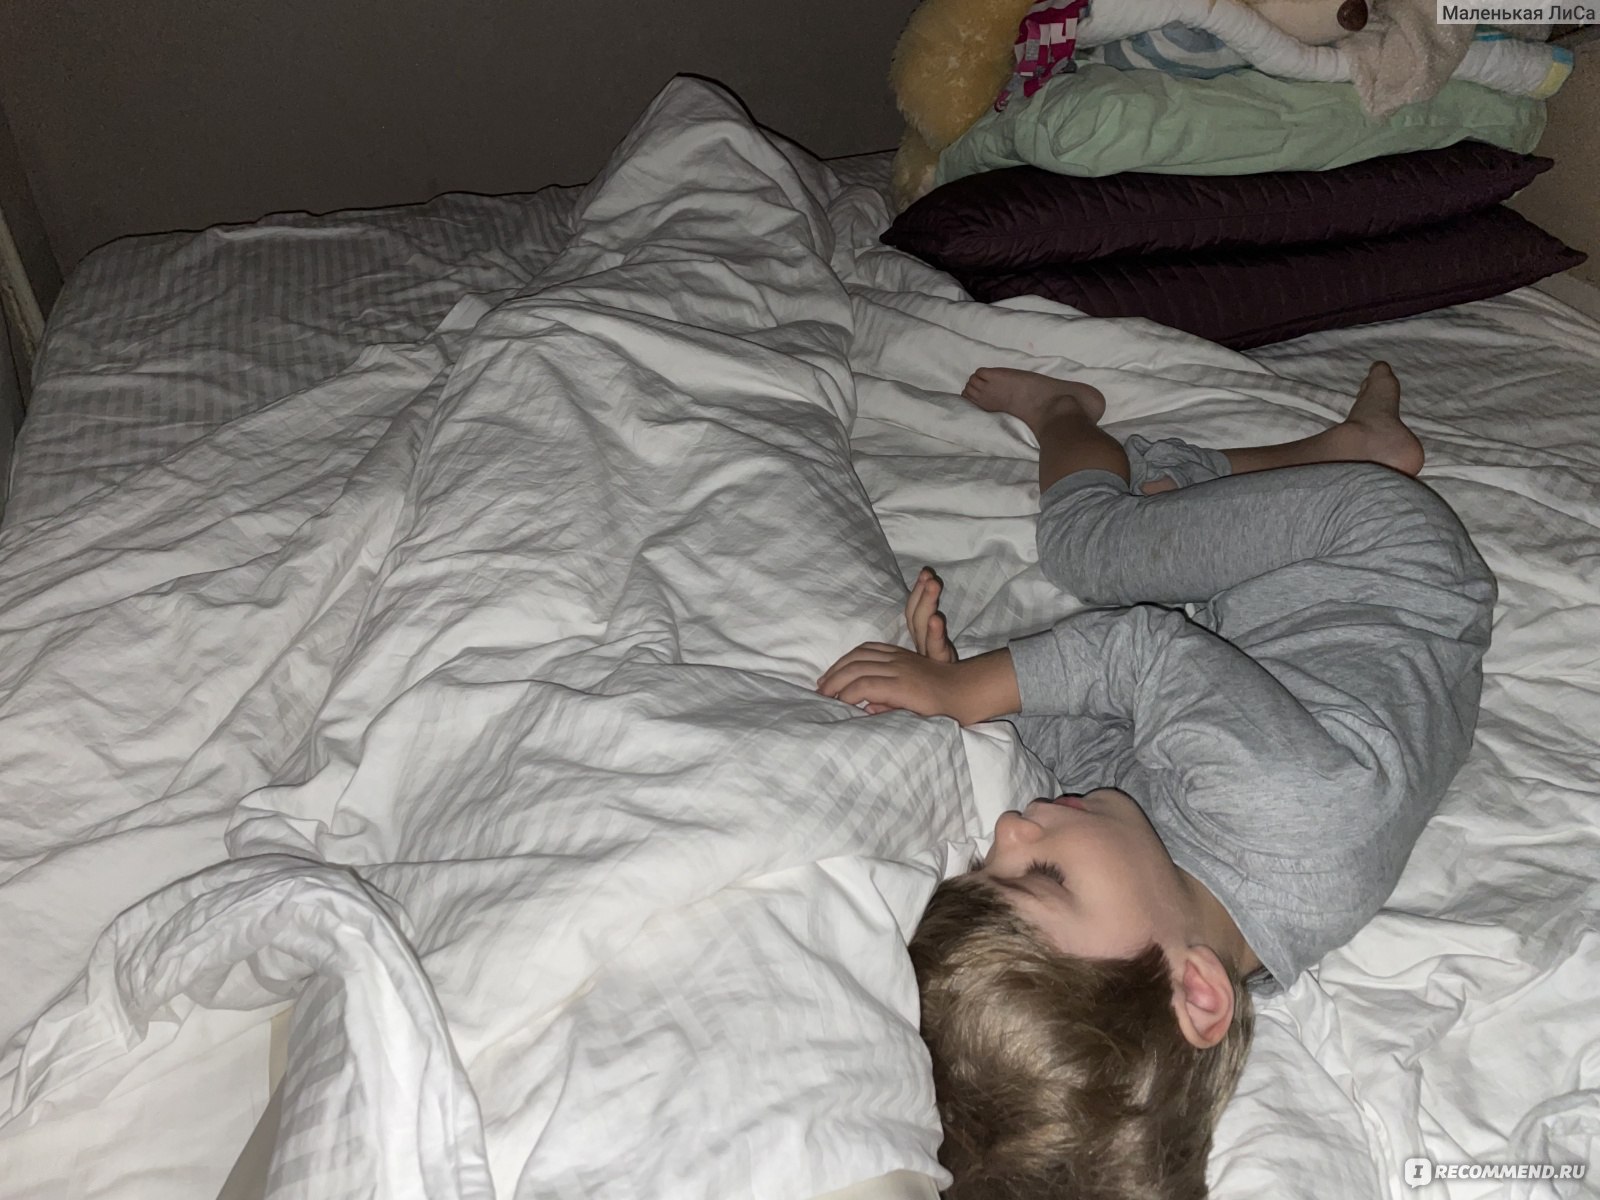 Ребенок 5 месяцев упал с кровати на пол на спину